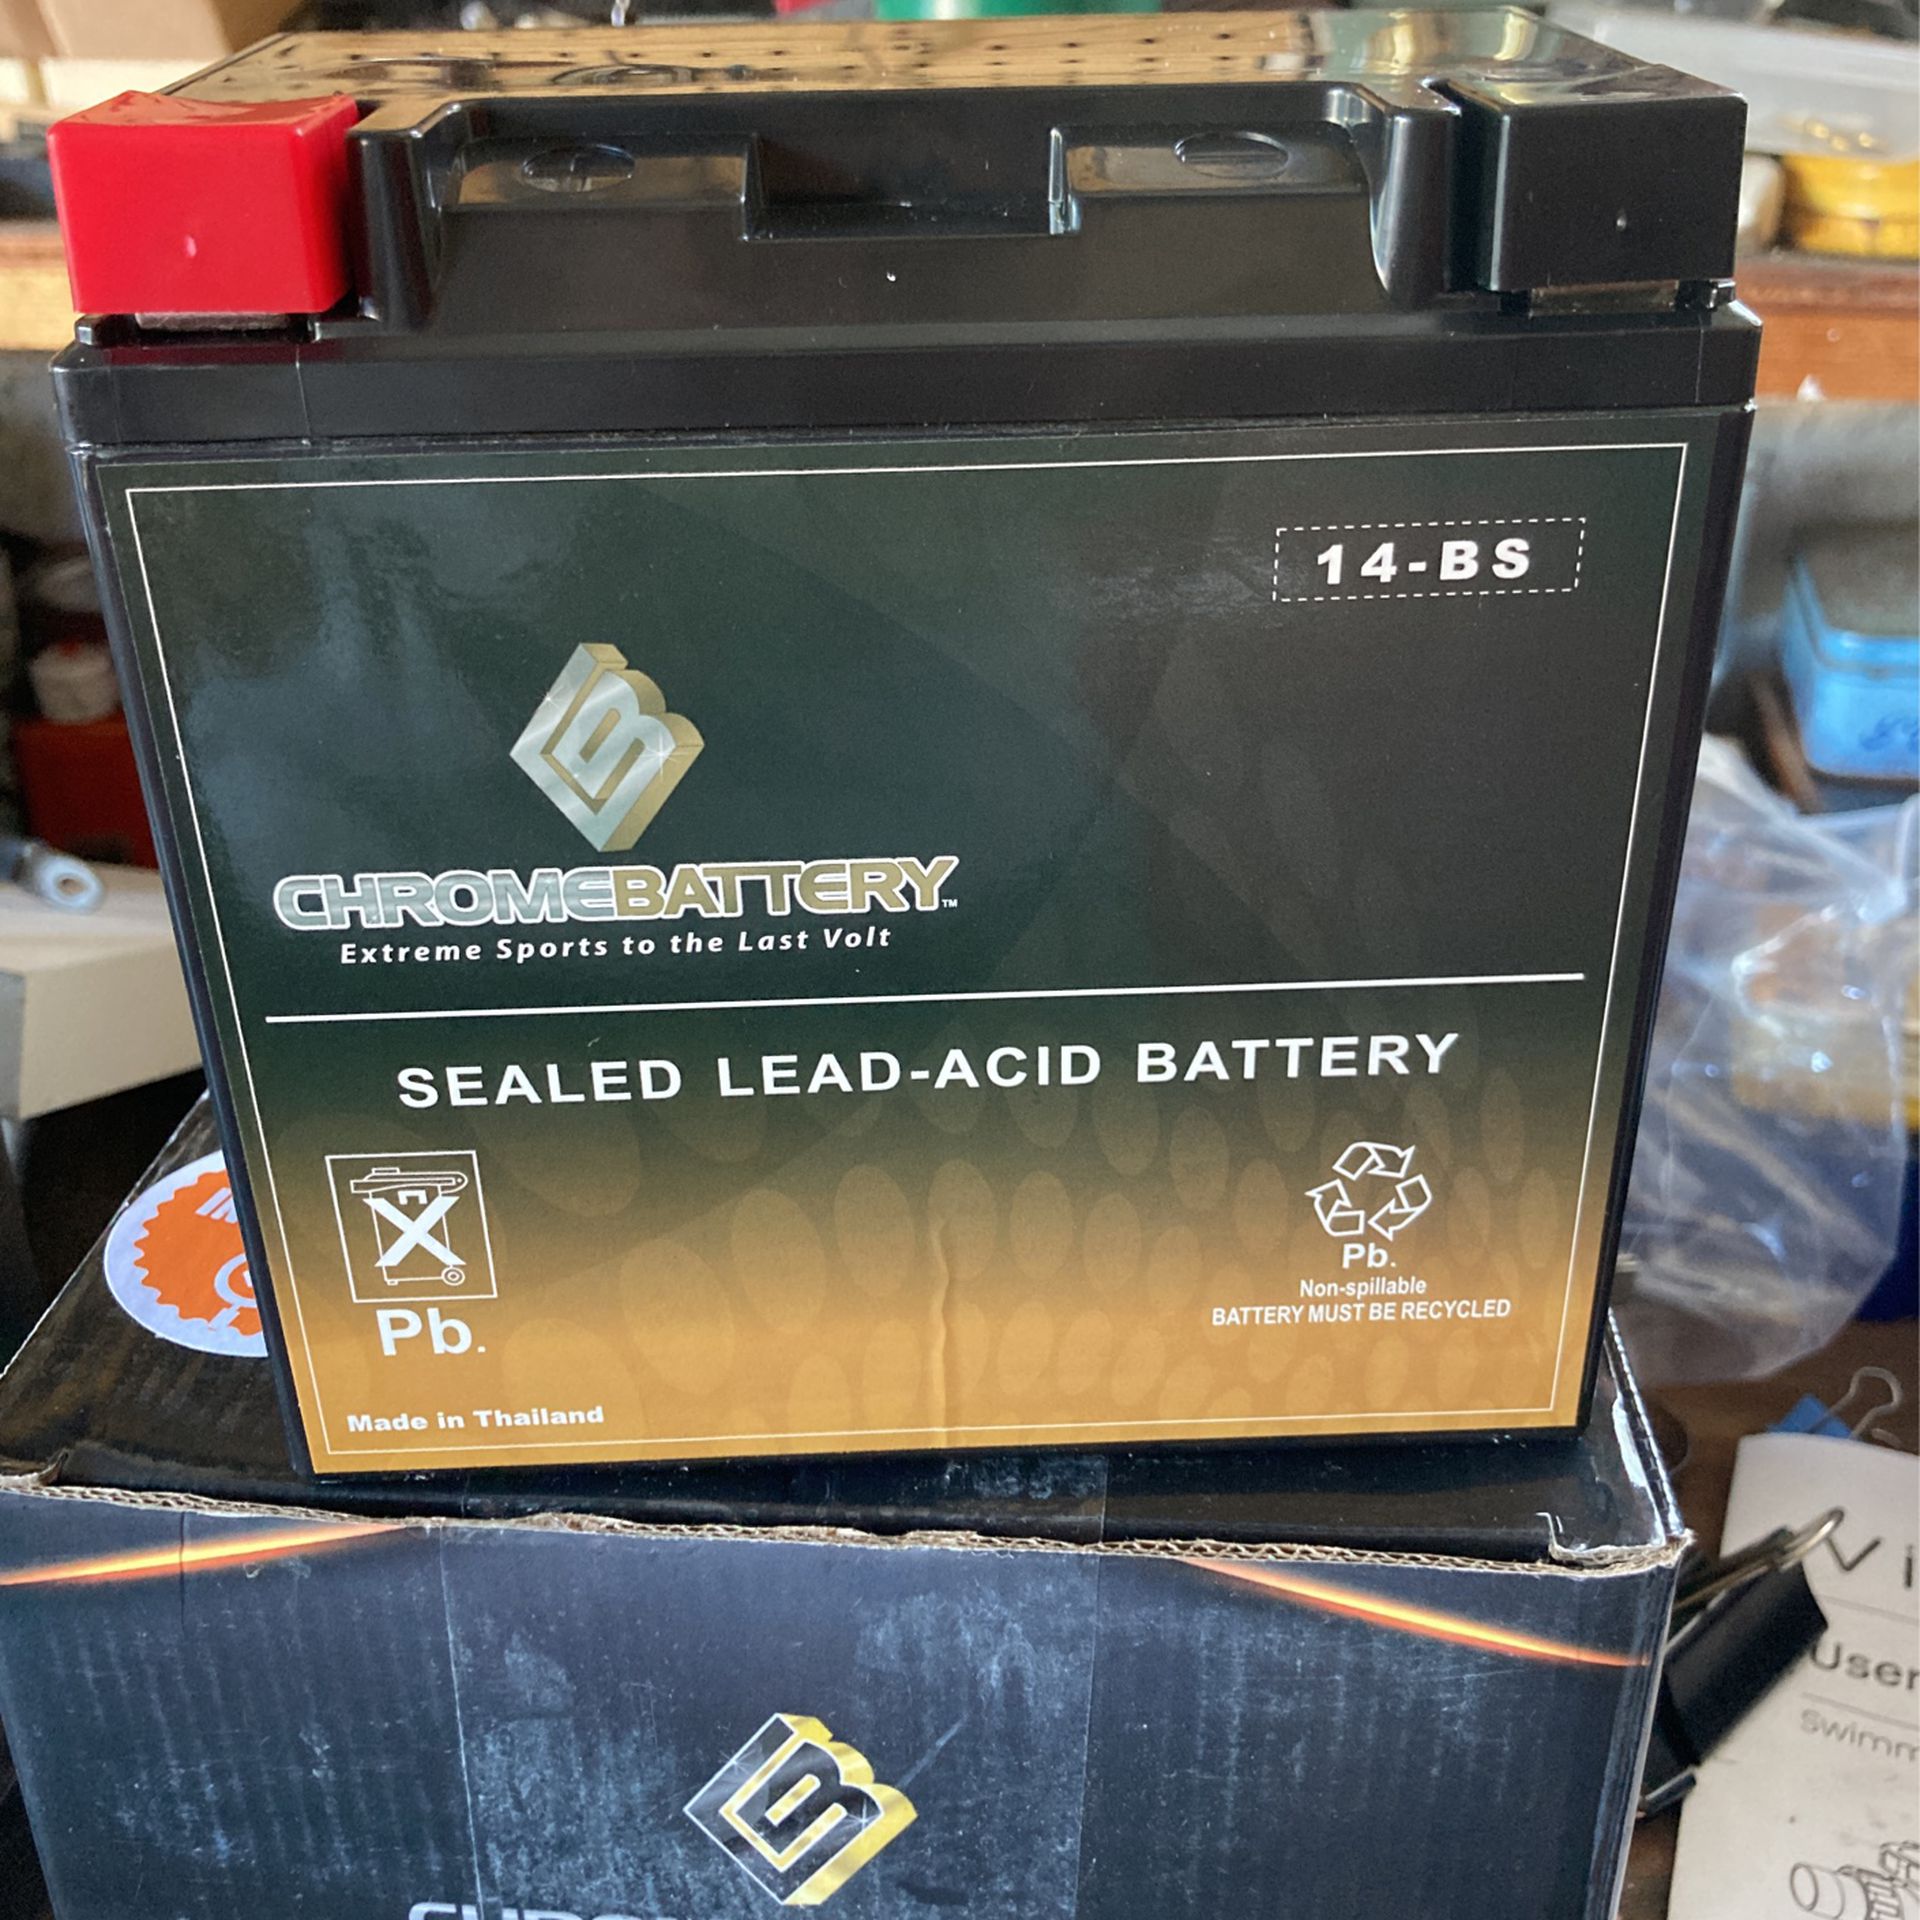 Chrome Battery 14-BS